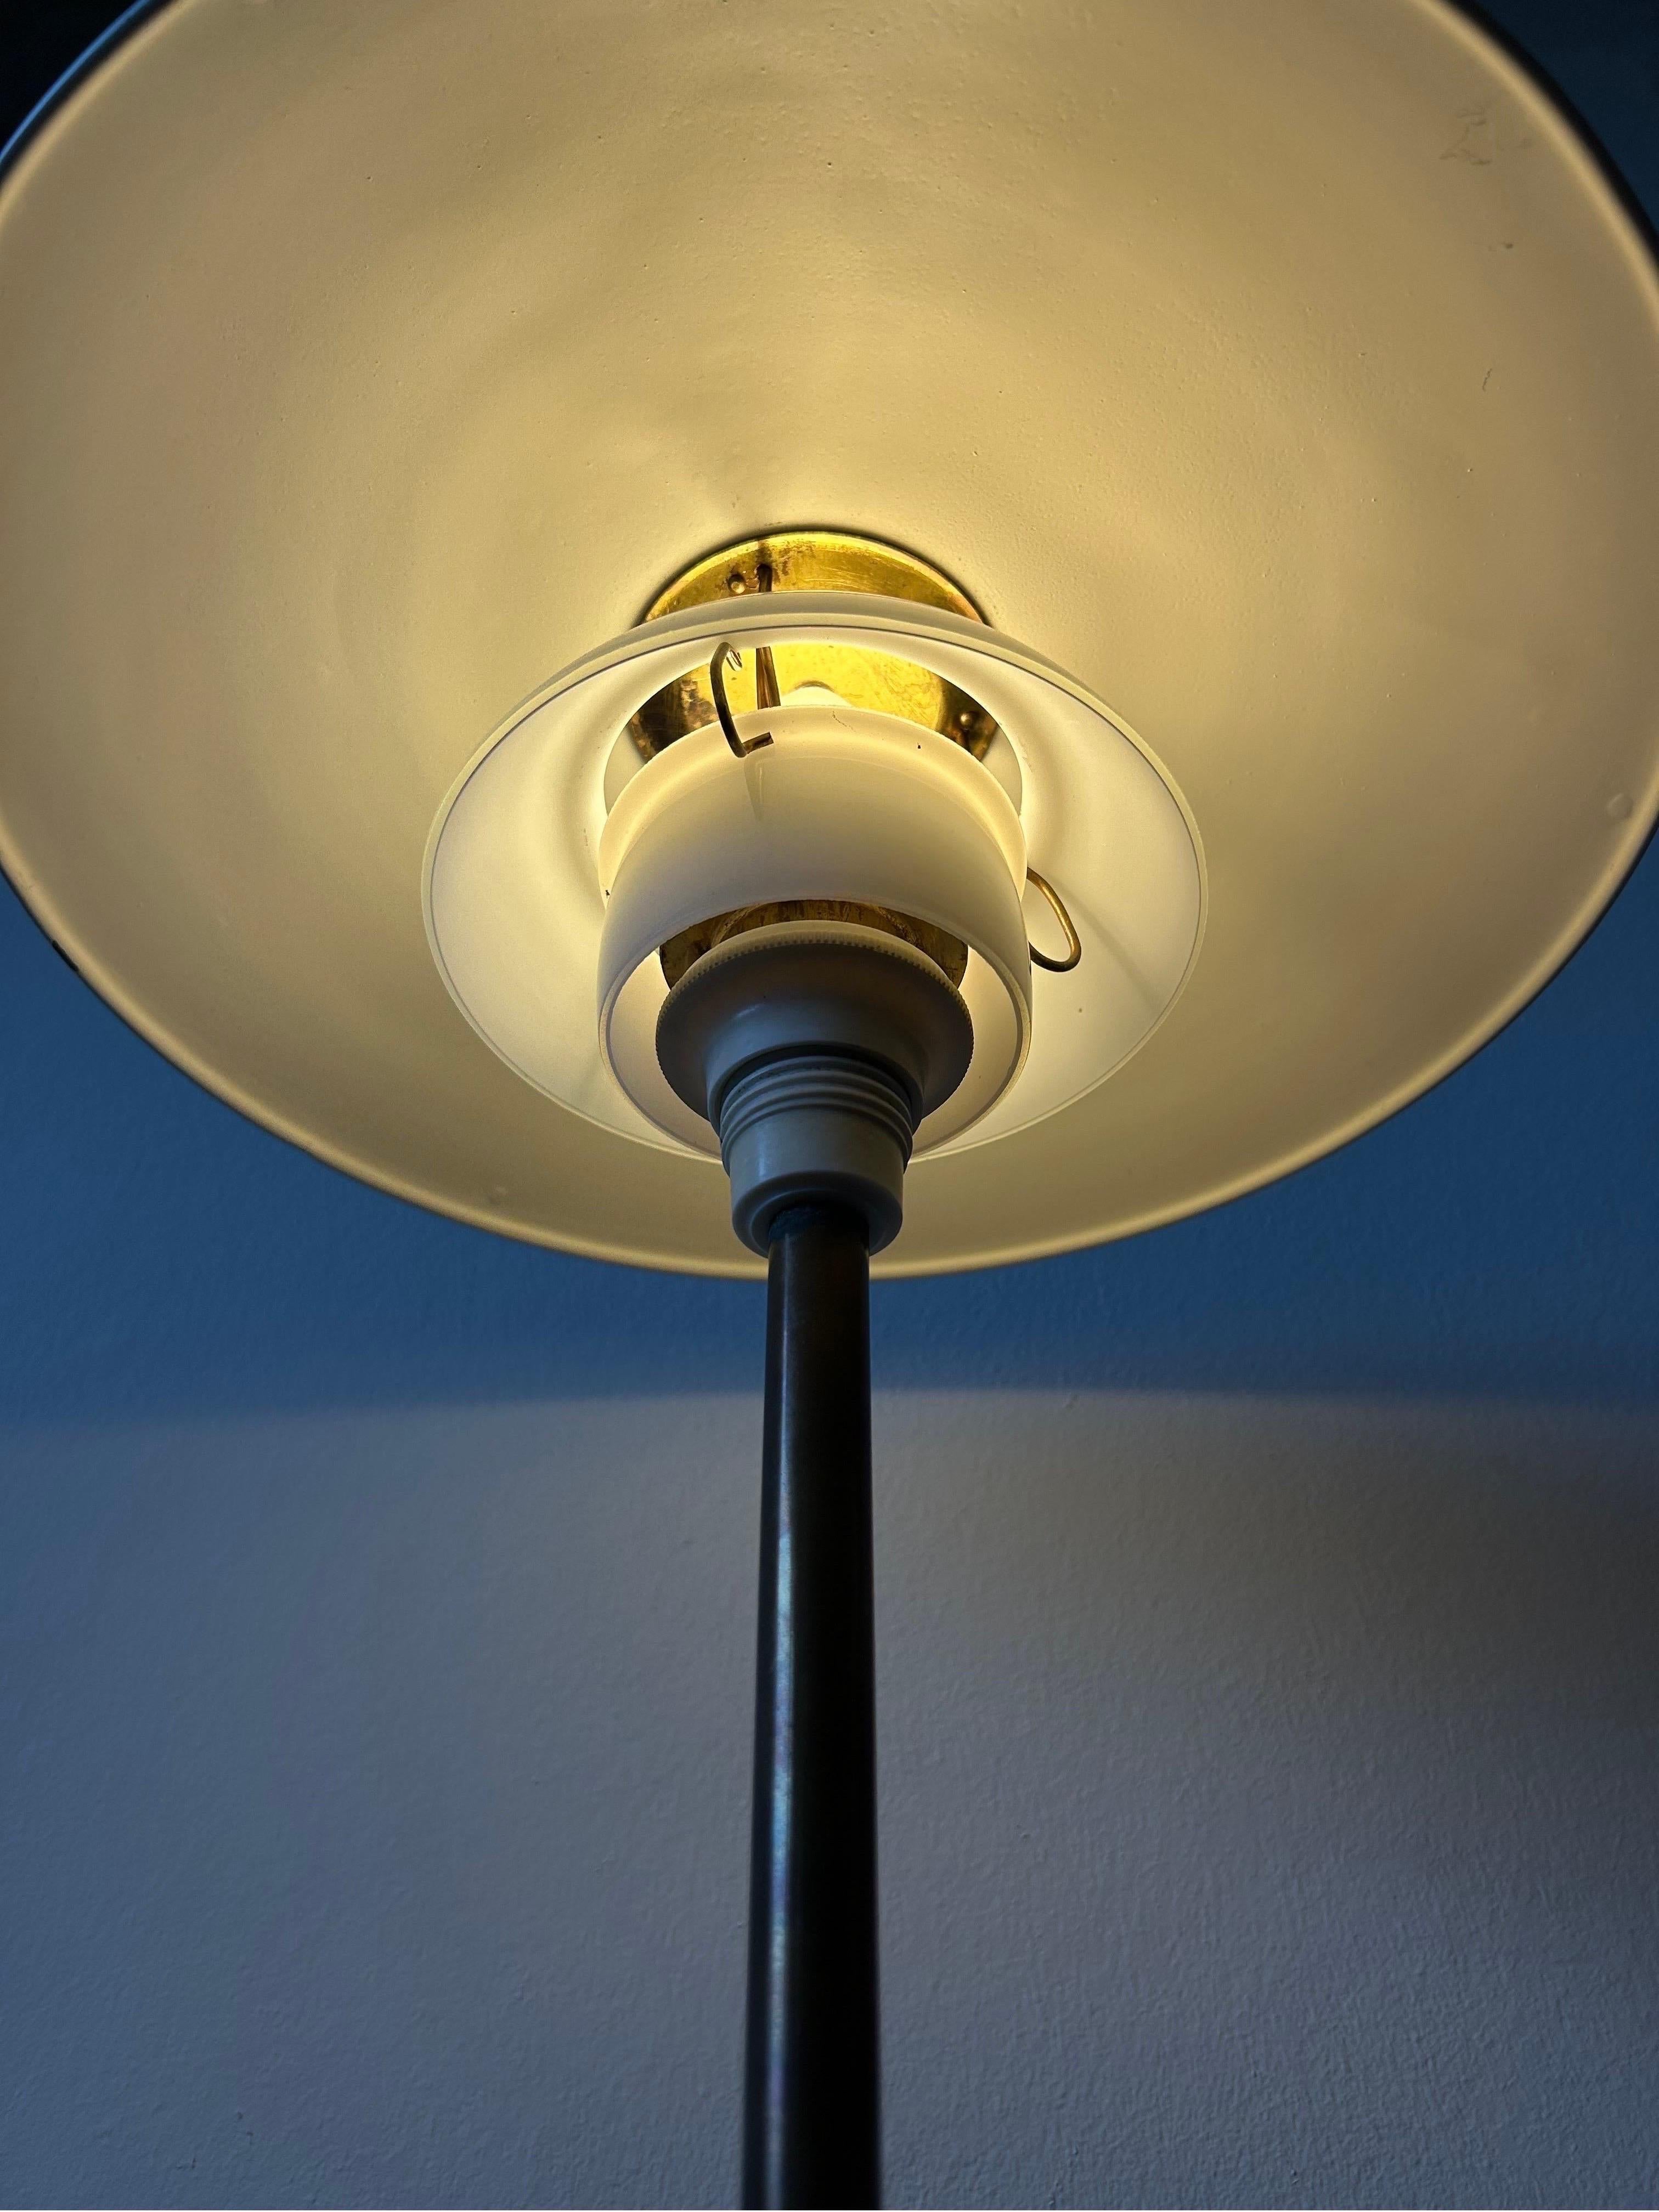 Lampe de table Poul Henningsen modèle 3/2,5 fabriquée par Louis Poulsen dans les années 1940. La structure de la lampe comporte une douille en bakélite blanche et un boîtier d'interrupteur, une tige en laiton foncé, une base en métal laqué blanc, un